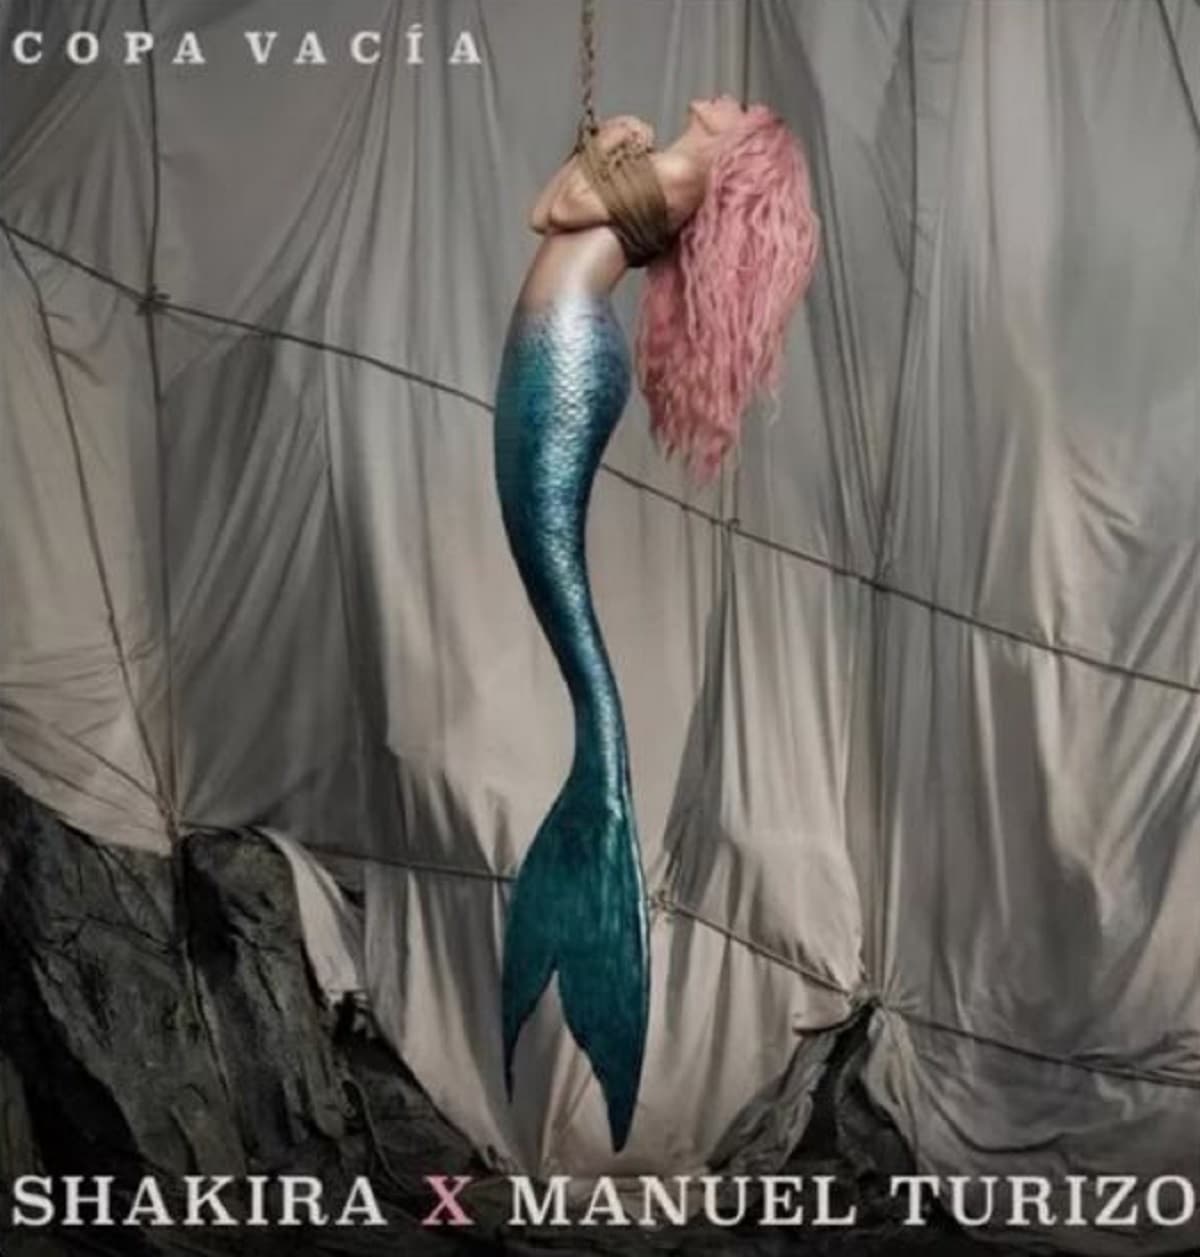 Shakira “Copa vacía” Manuel Turizo